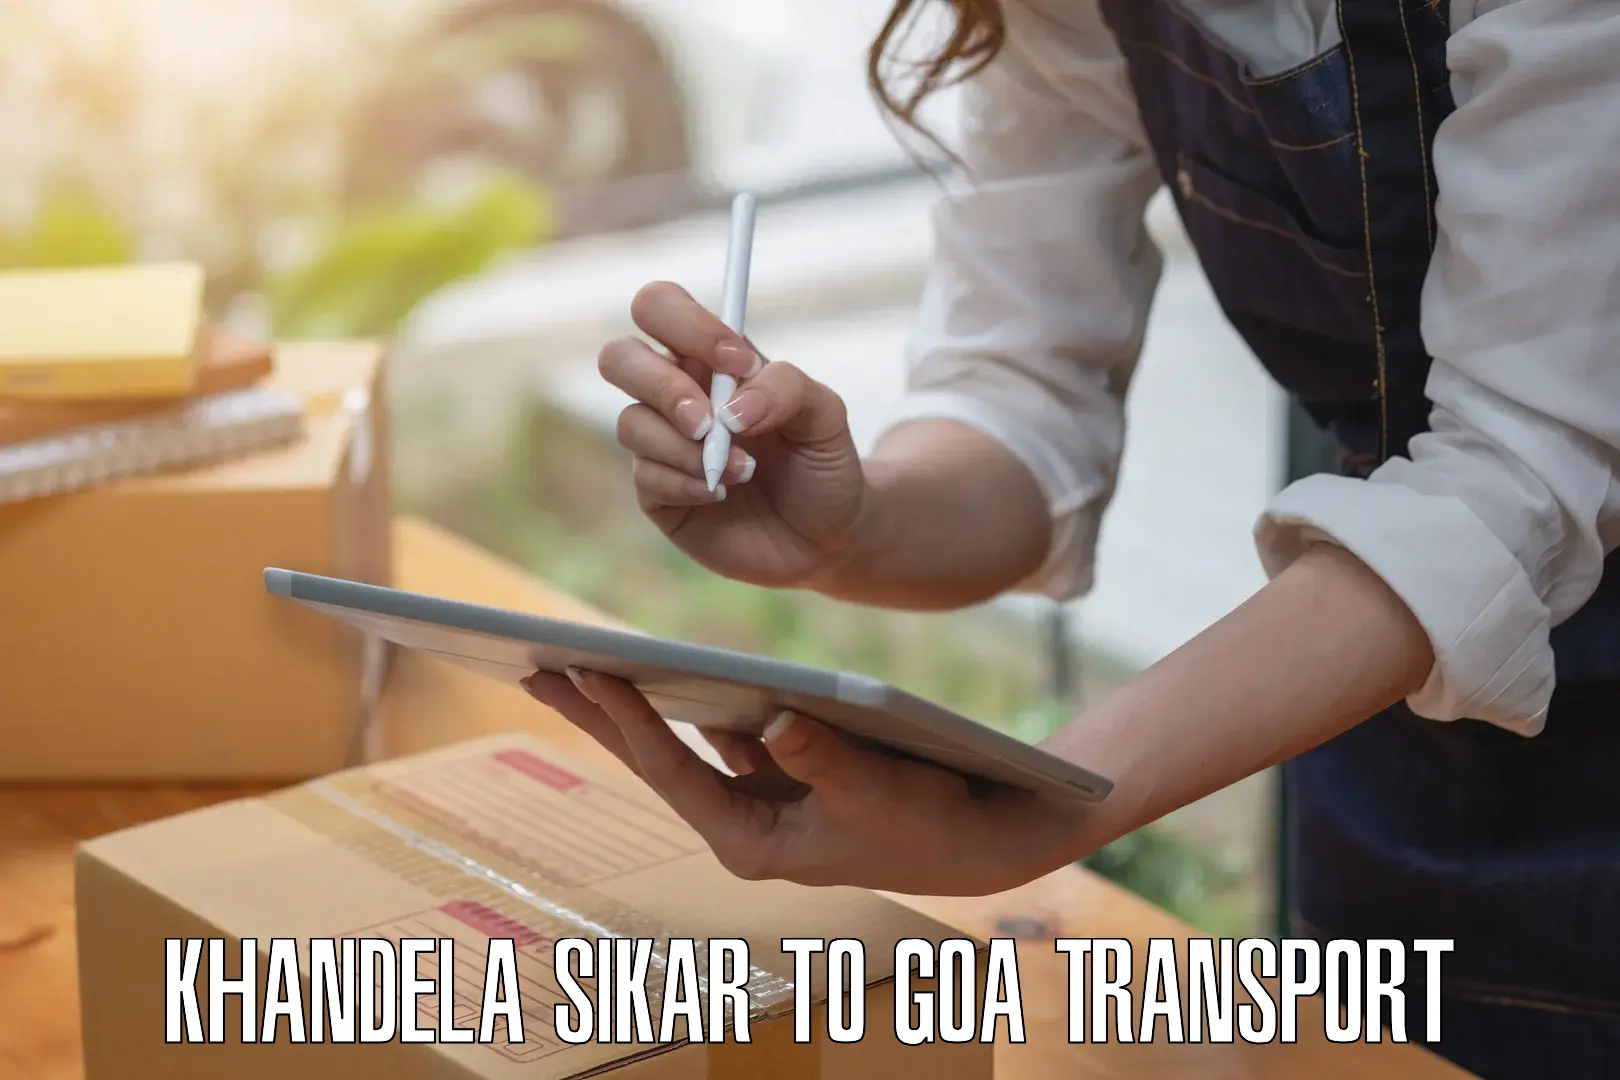 Road transport online services in Khandela Sikar to Mormugao Port